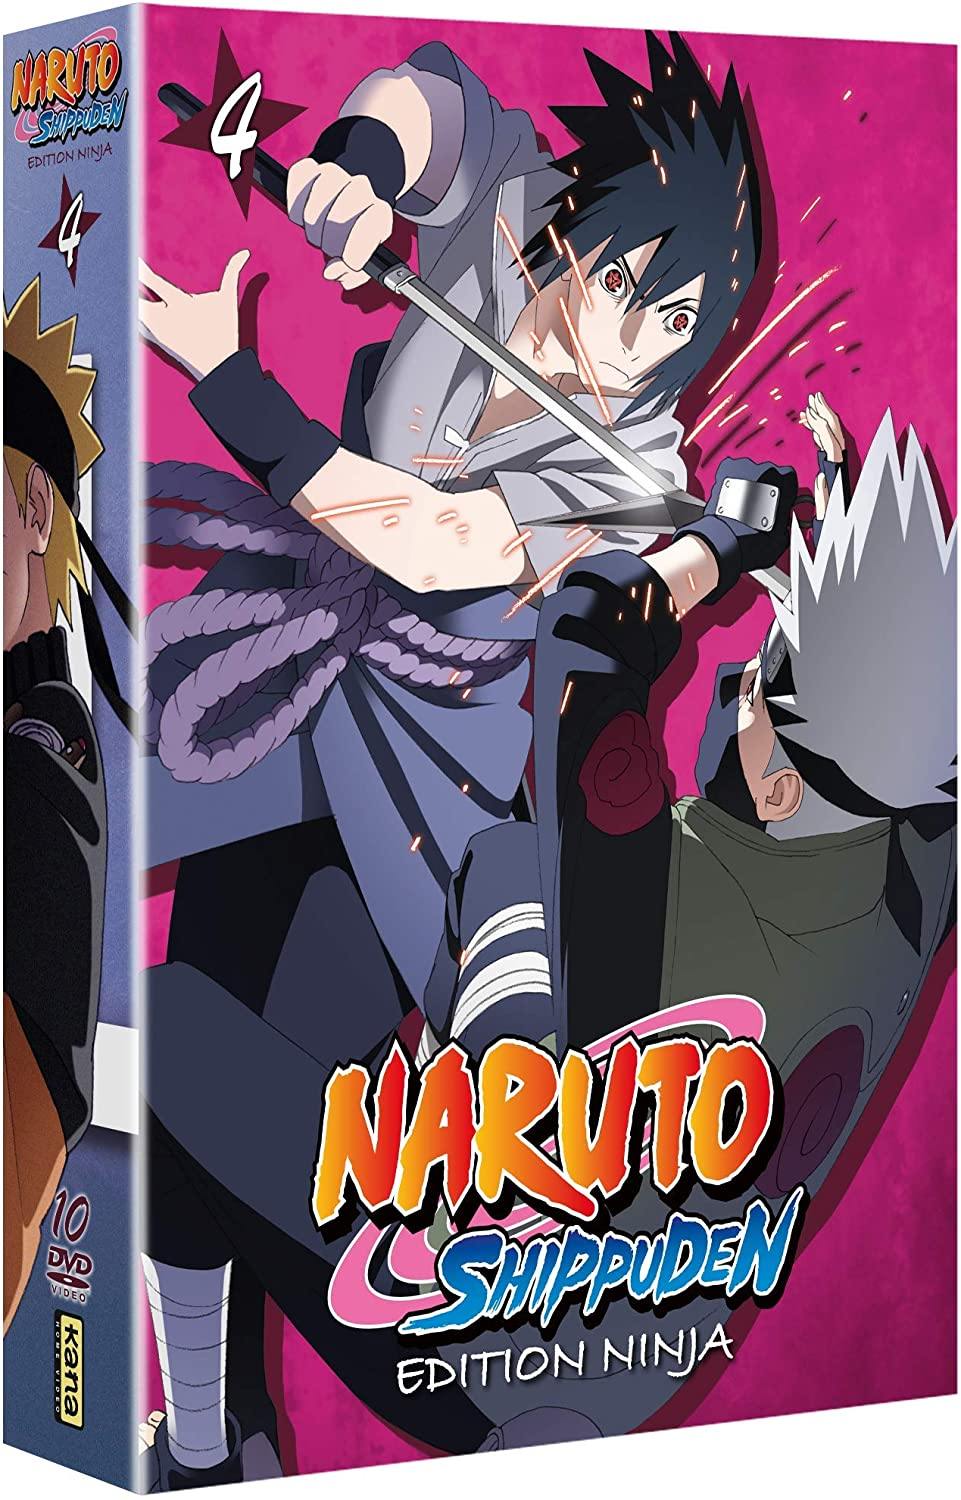 Naruto Shippuden, édition Ninja, Vol. 4 [DVD] - flash vidéo